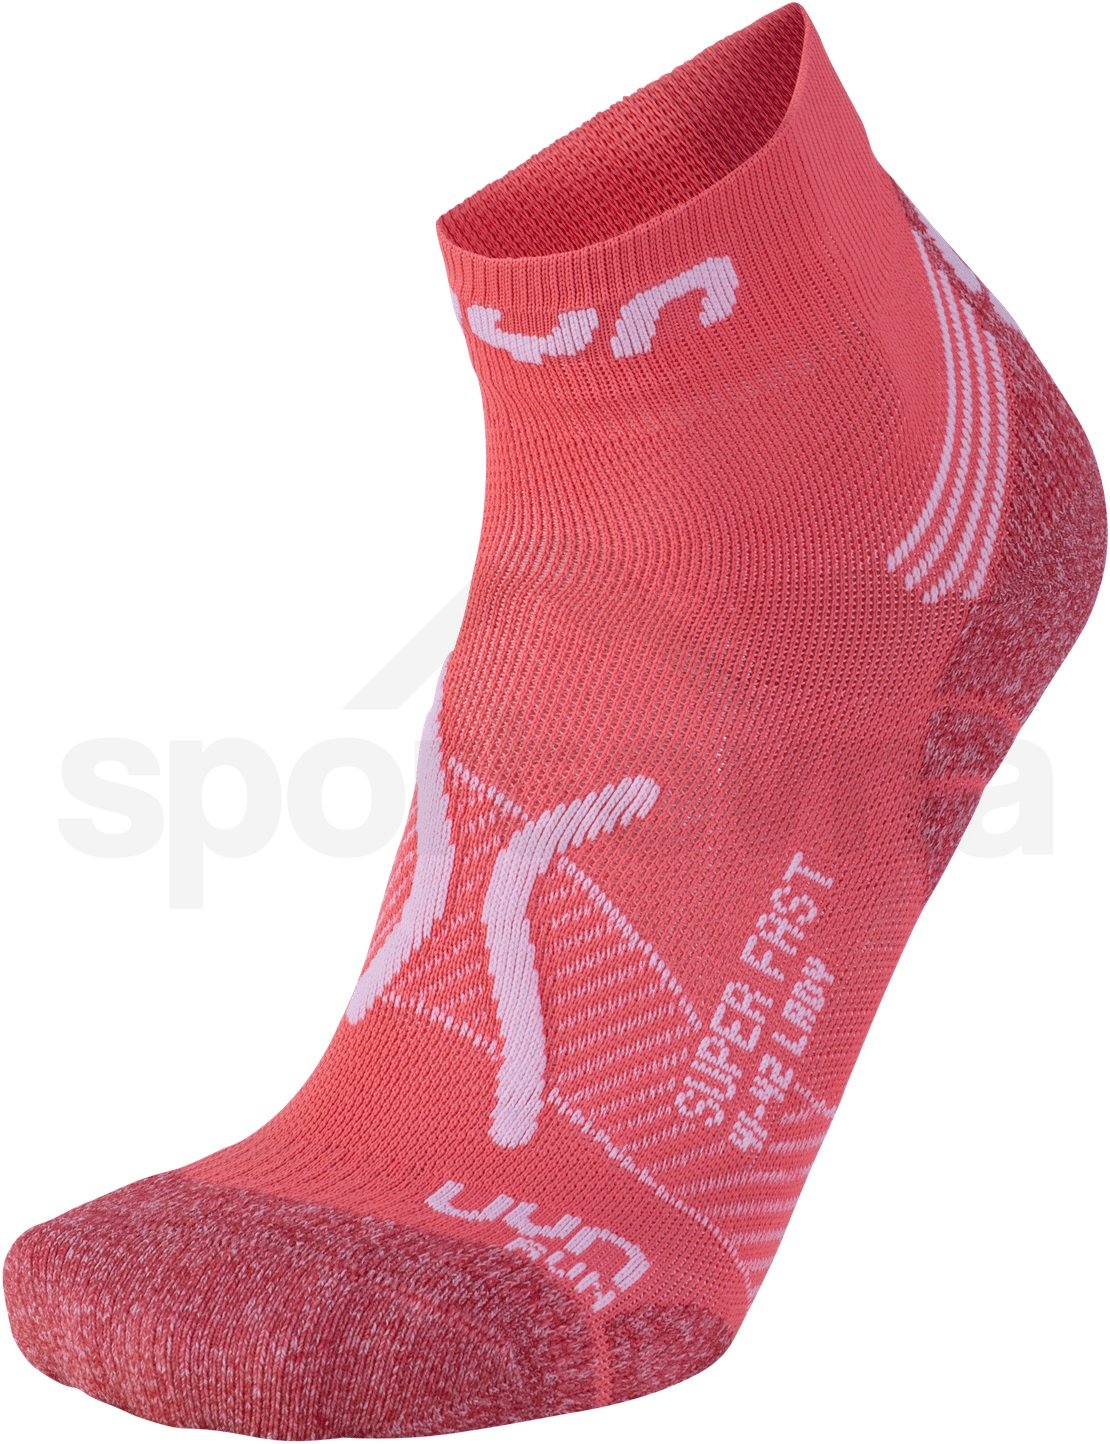 Ponožky UYN LADY RUN SUPER FAST - korálová/bílá